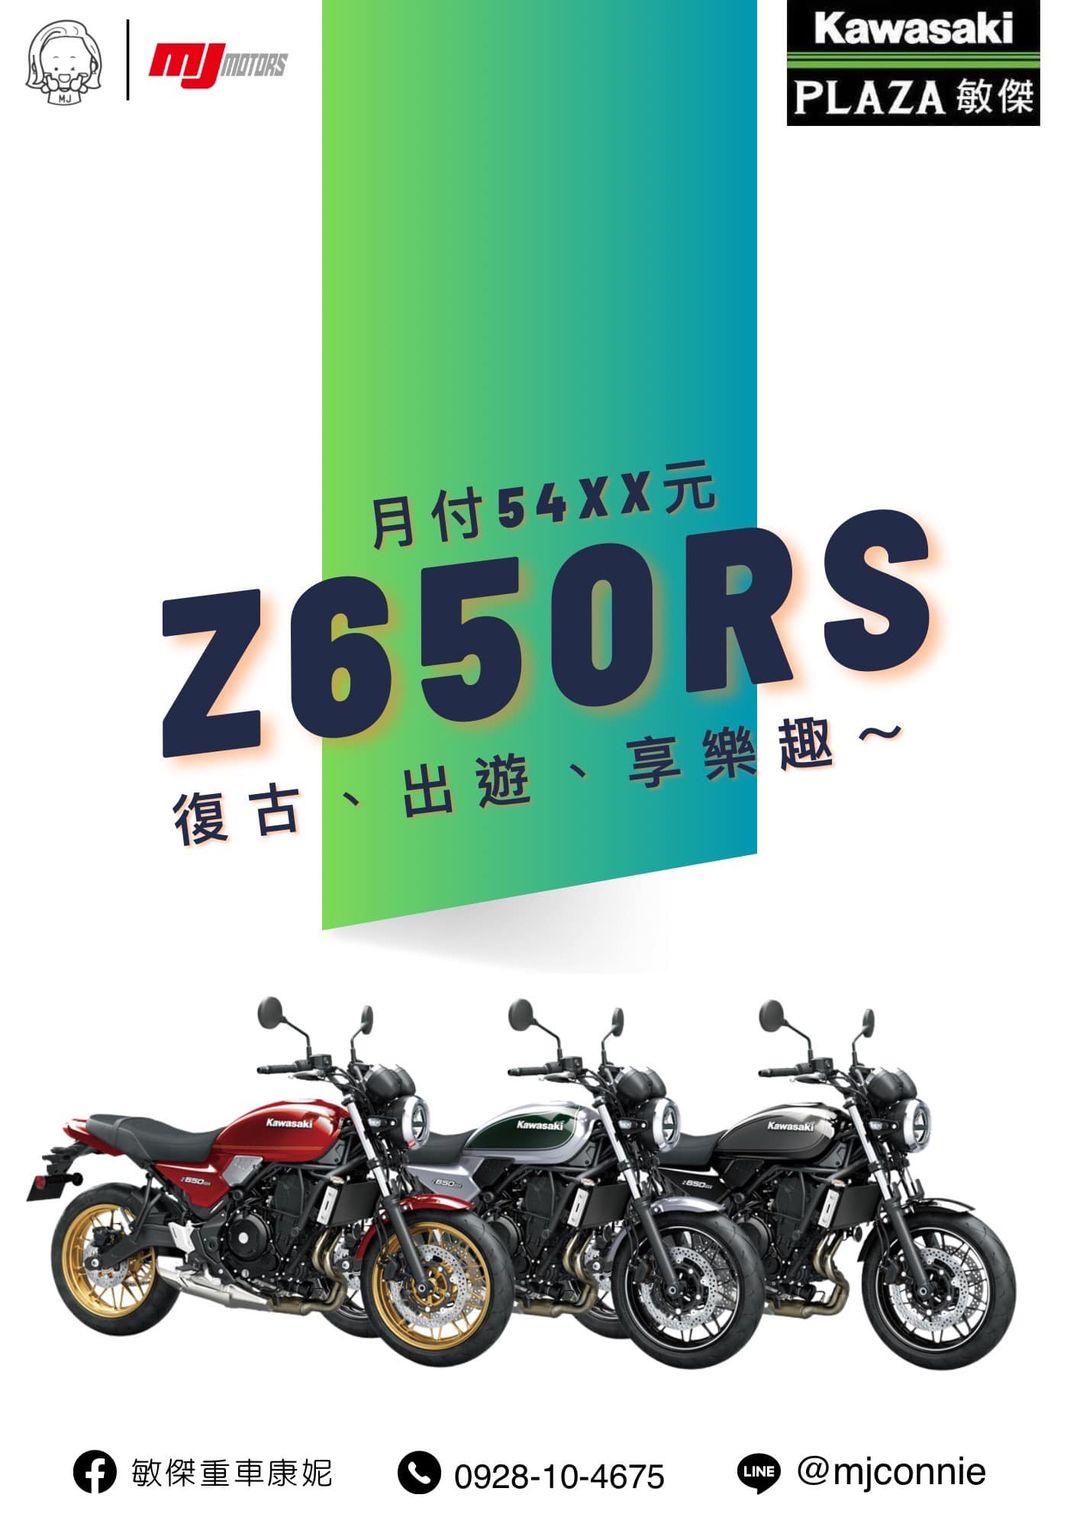 【敏傑車業資深銷售專員 康妮 Connie】Kawasaki Z650RS - 「Webike-摩托車市」 『敏傑康妮』Kawasaki Z650RS 現車現領牌！！月付5XXX元 入手復古紅牌車 超輕鬆！